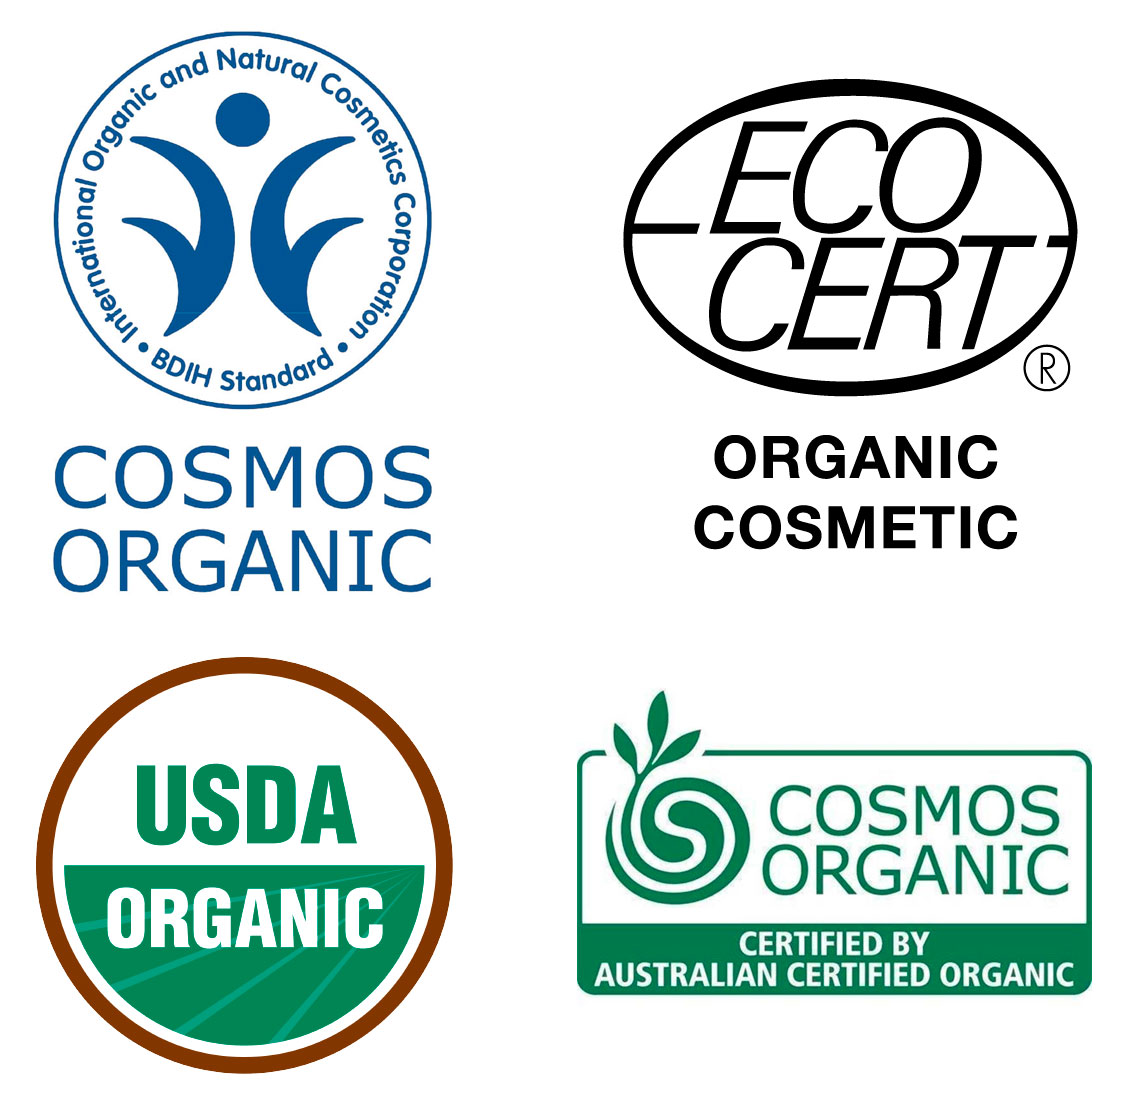 В разных странах существуют различные организации, которые сертифицируют органическую косметику. На упаковке косметического средства ищите эмблему организации, которая сертифицировала этот продукт.